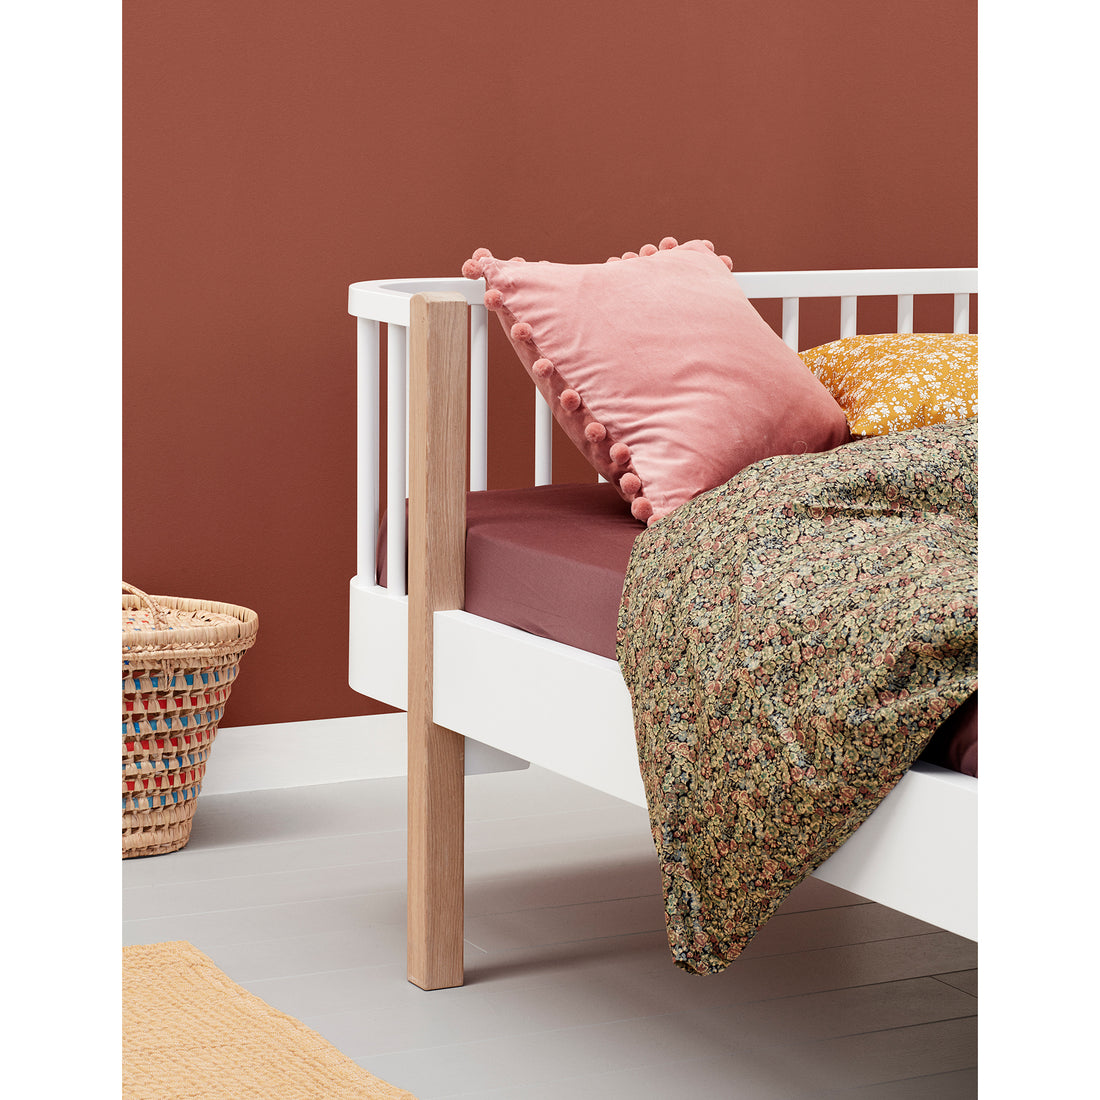 Oliver Furniture Wood Junior Day Bed White/Oak (Pre-Order; Est. Delivery in 6-10 Weeks)